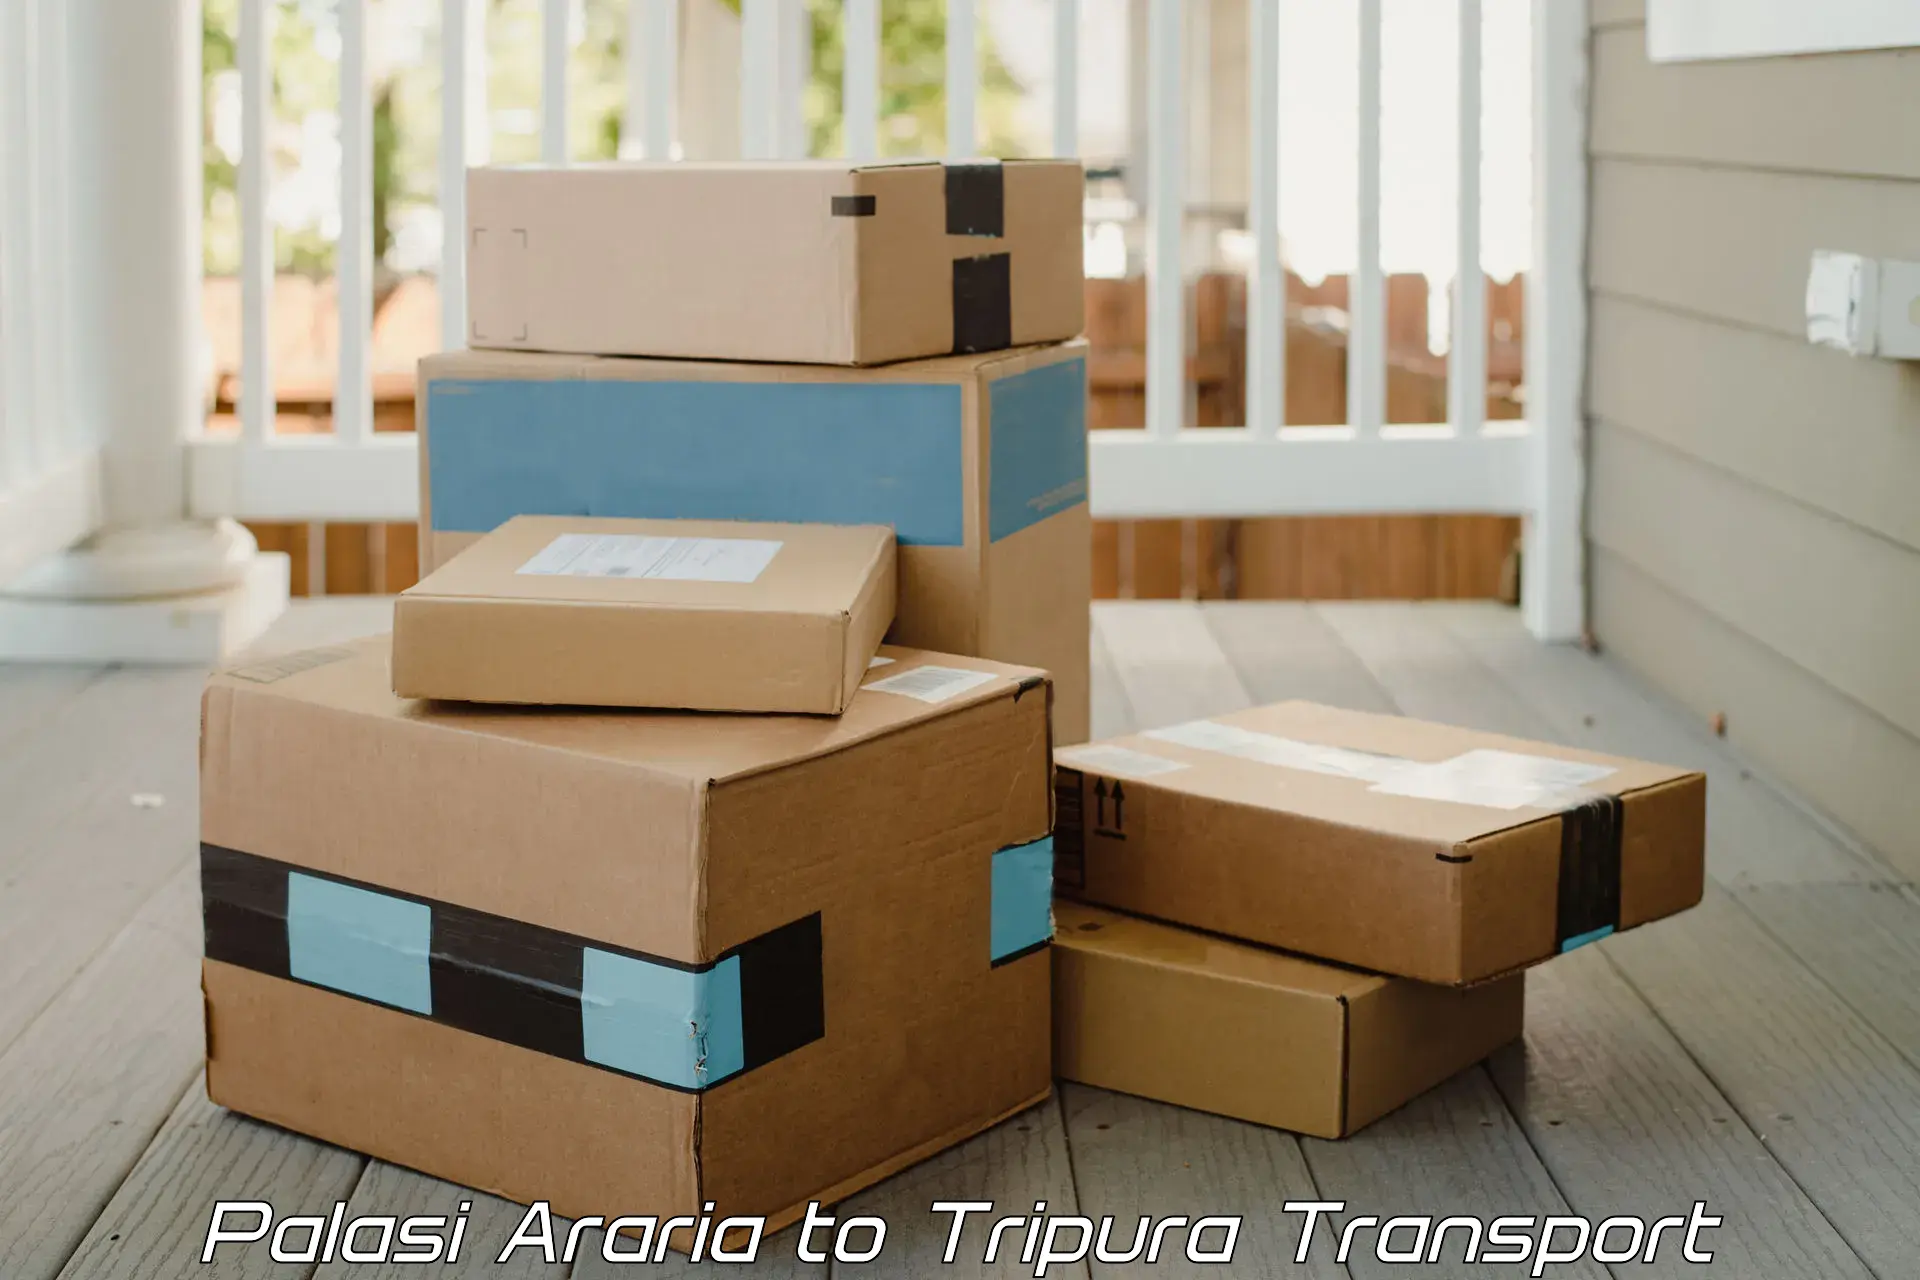 Vehicle parcel service Palasi Araria to IIIT Agartala